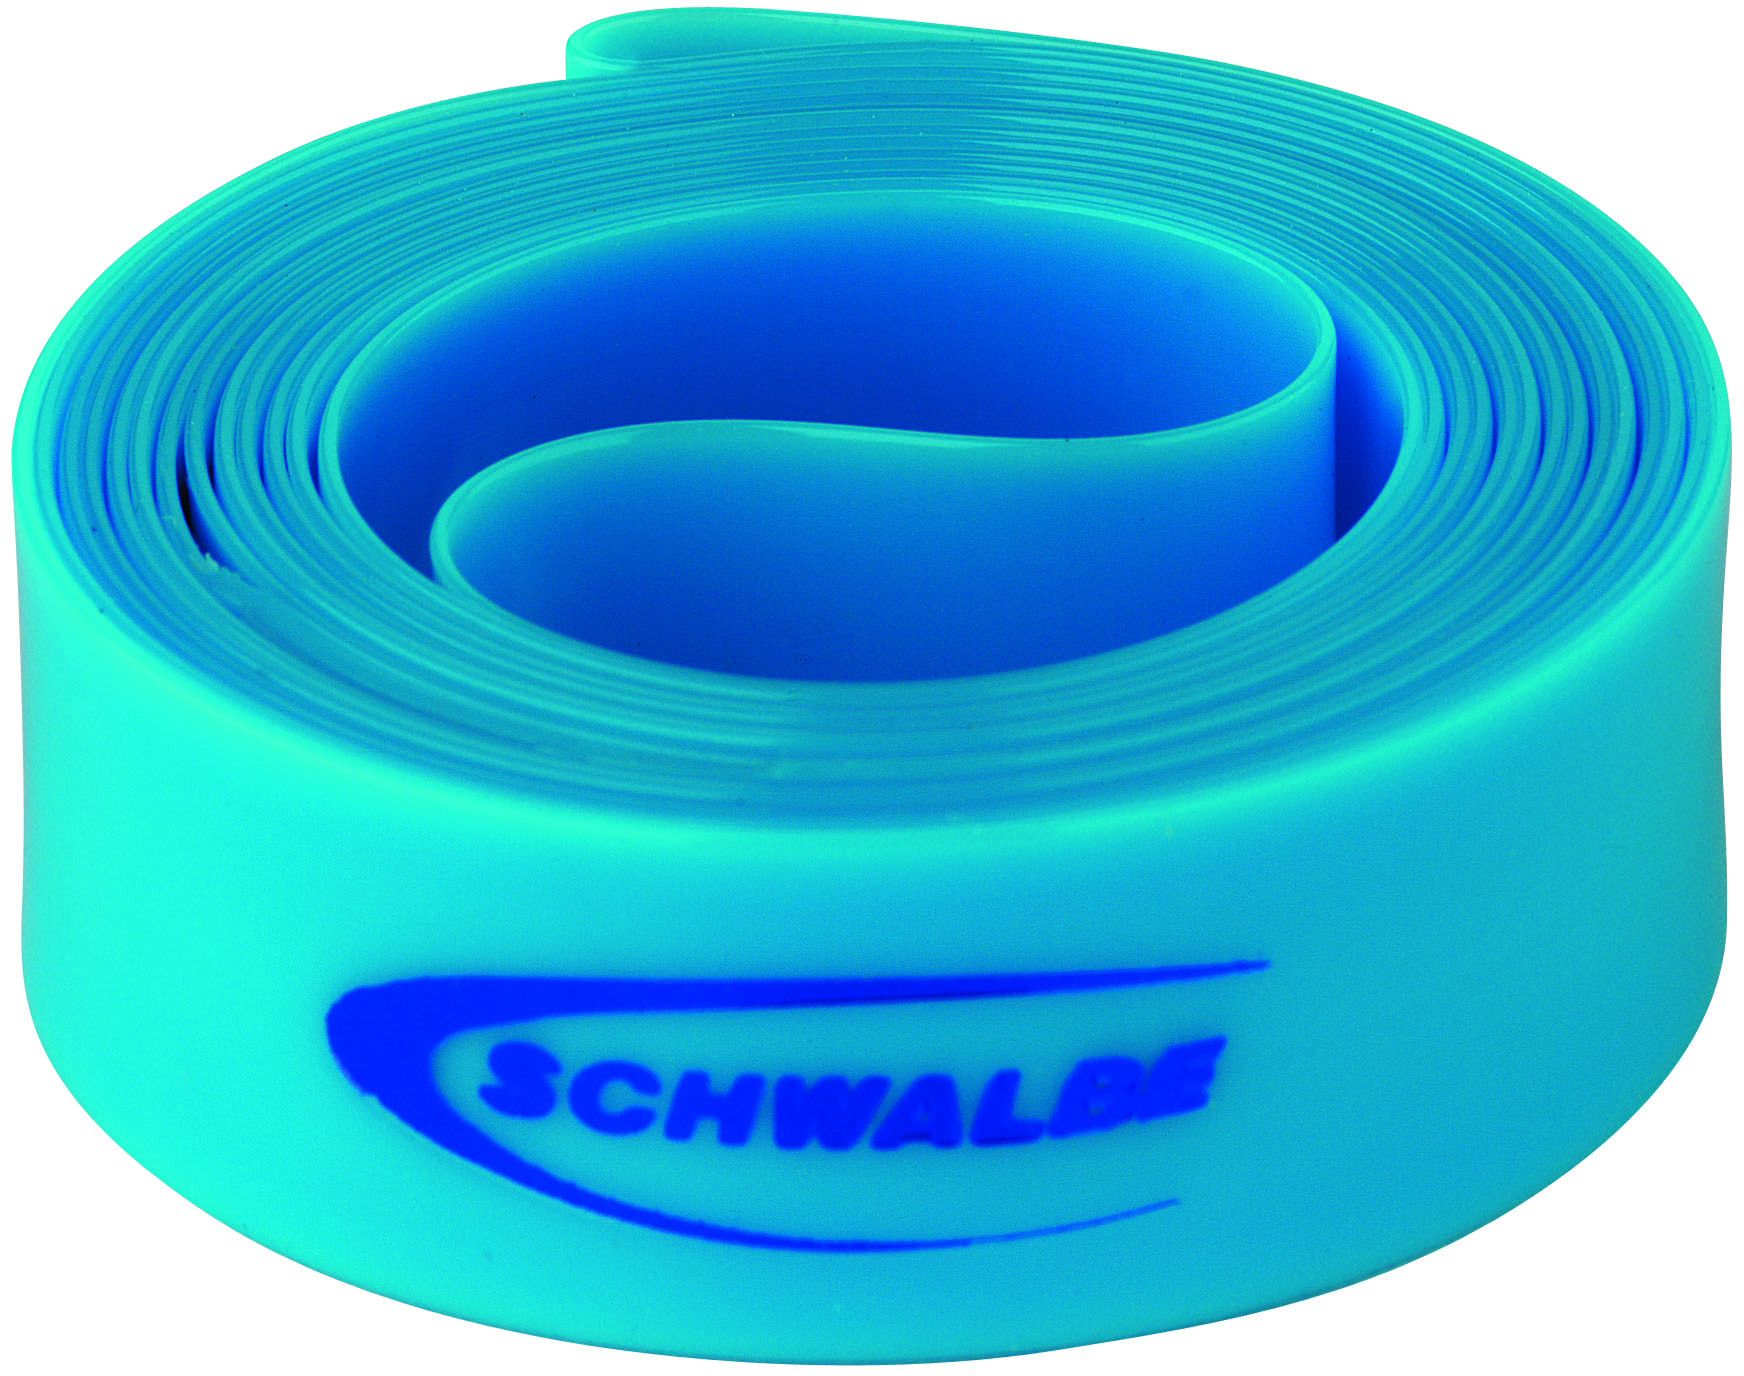 Schwalbe High Pressure Rim Tape 700C X 16mm